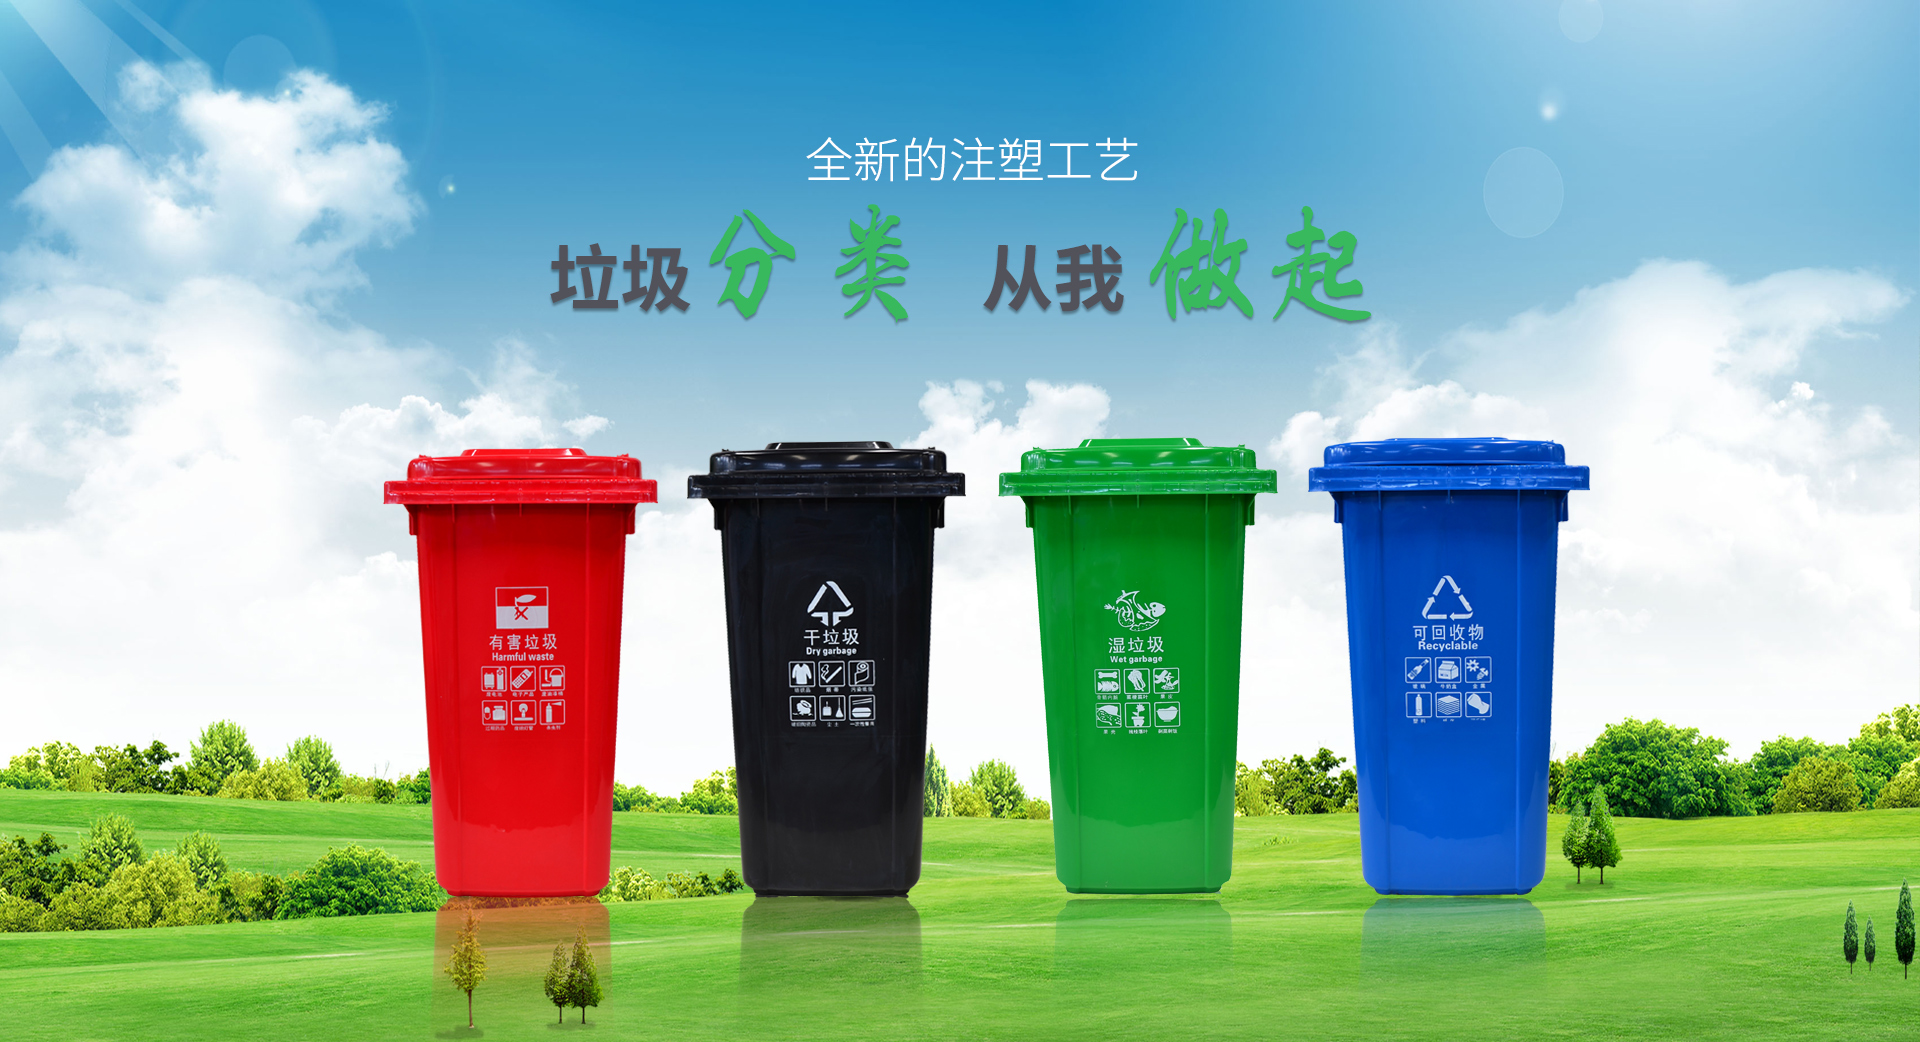 垃圾桶系列--全新的注塑工藝